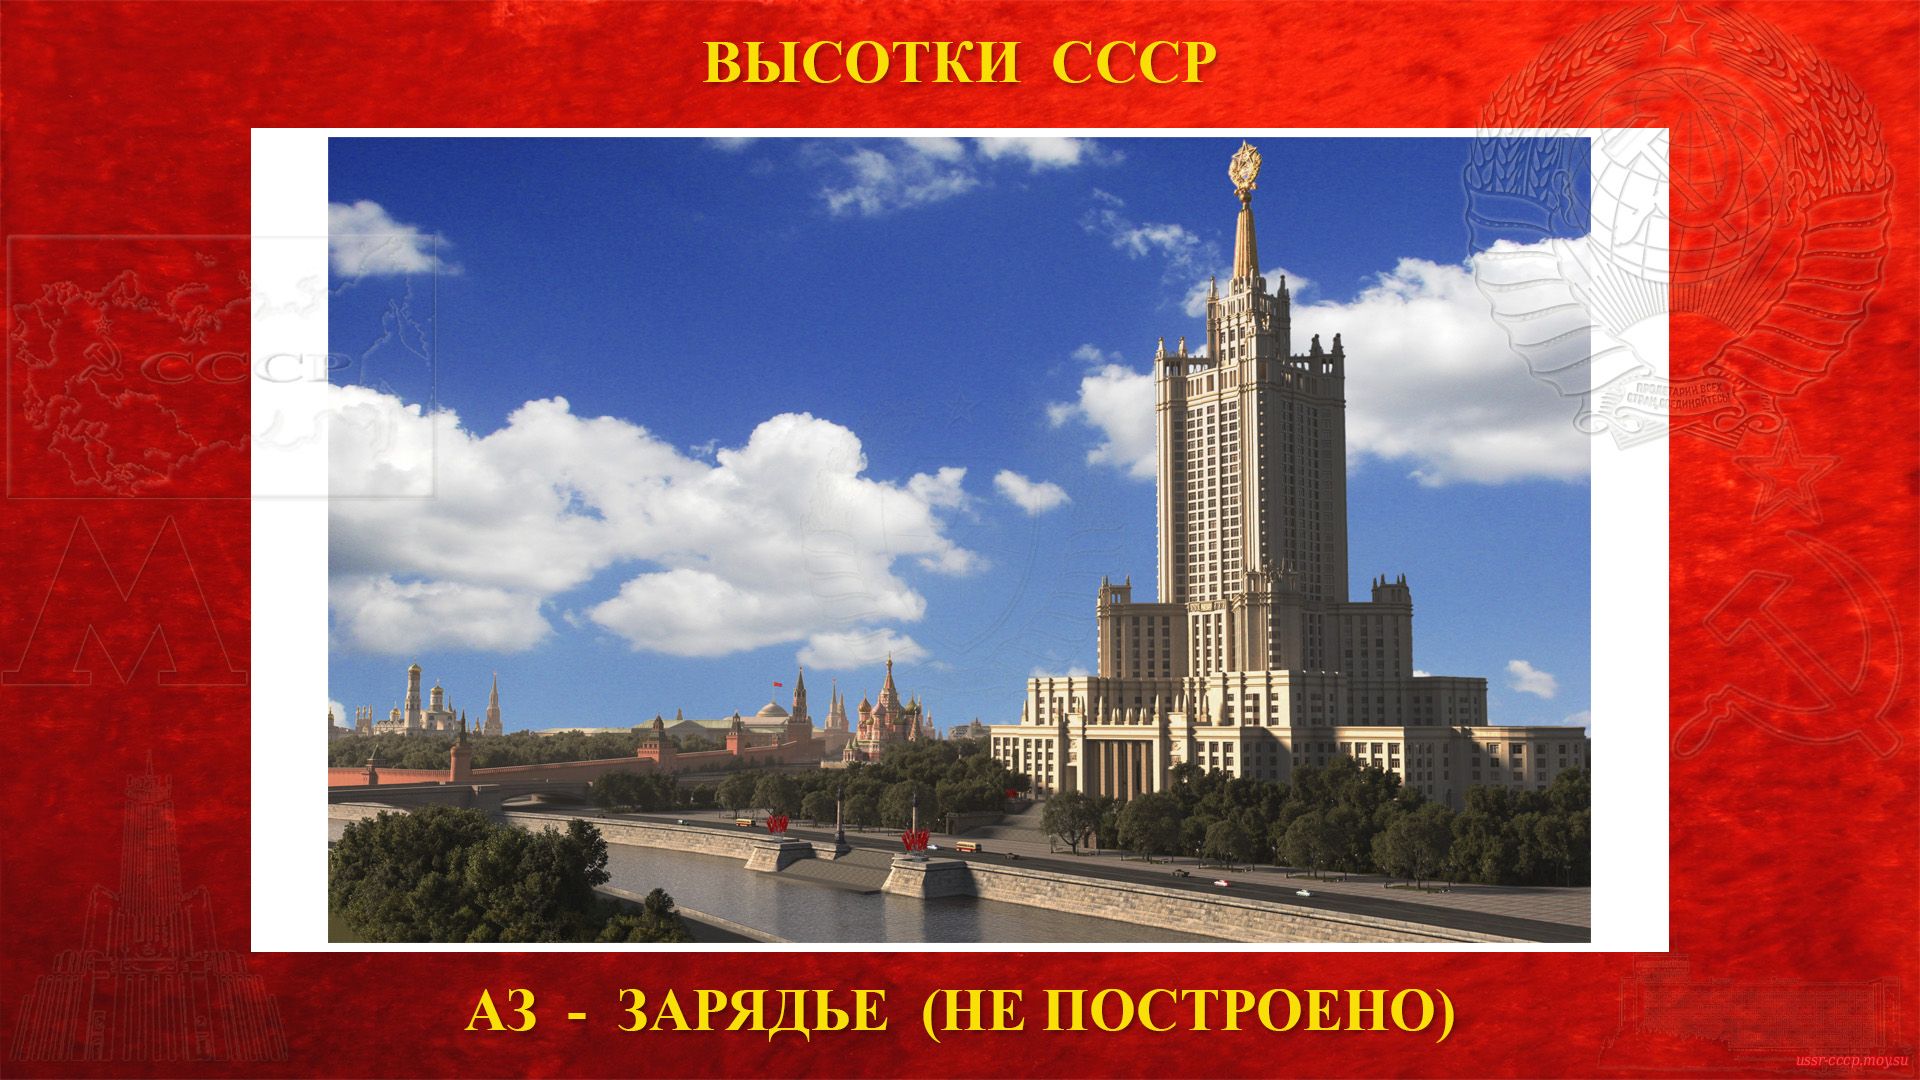 Административное здание Зарядье (Москва) — (Сталинская высотка) — История строительства высотки (1948—1952) (не построена)